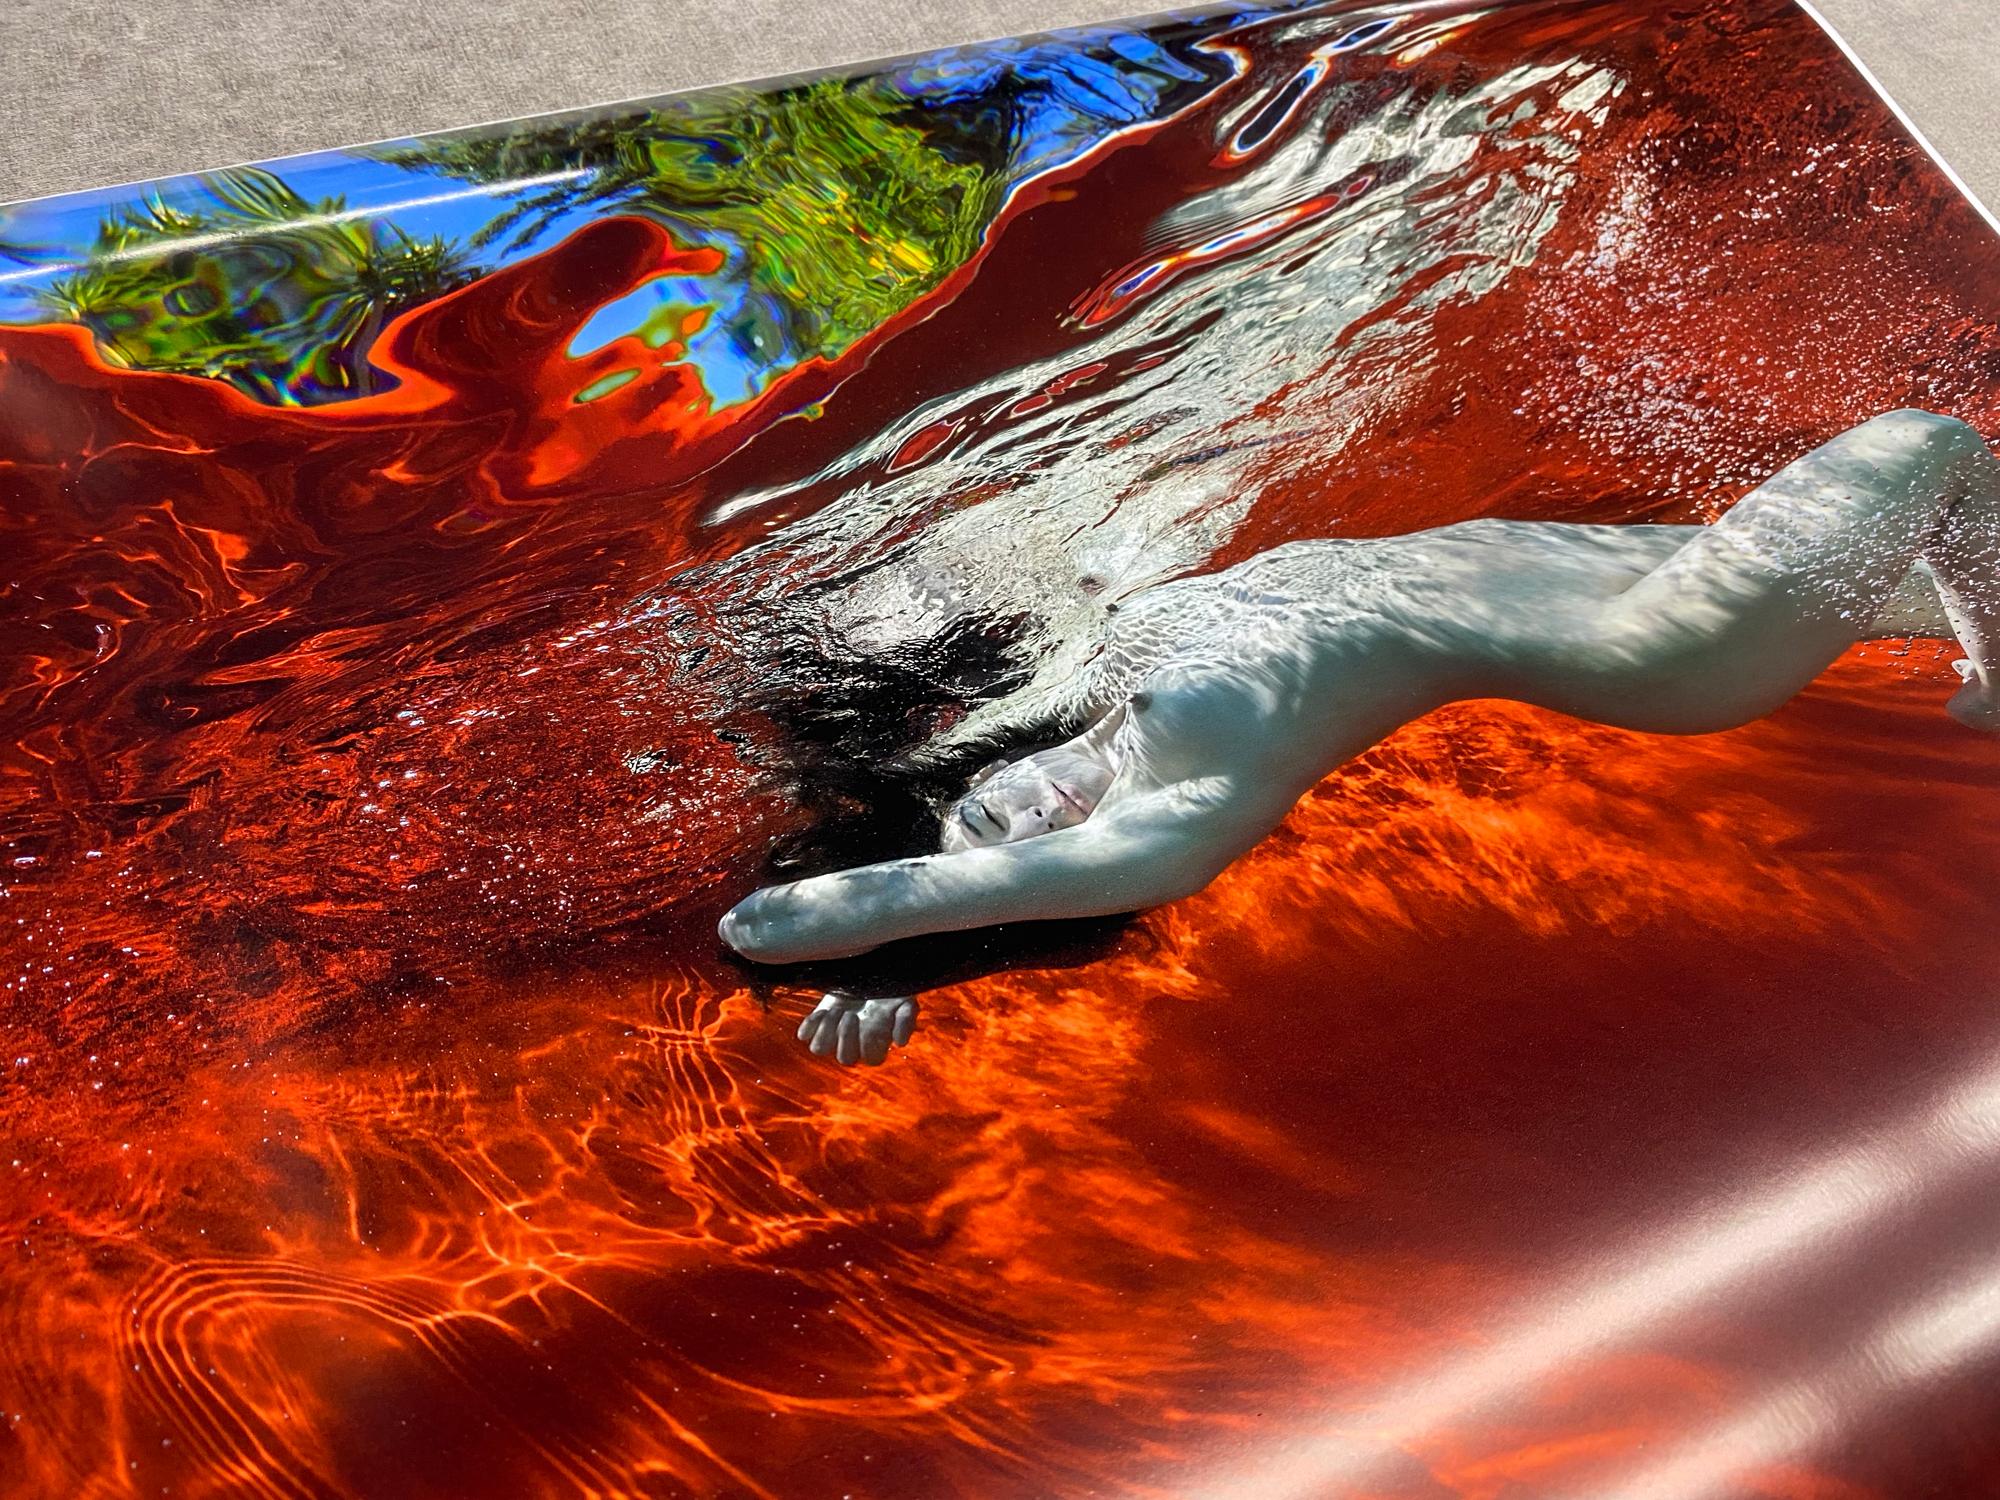 Ein Unterwasserfoto einer nackten jungen Frau mit dunklem Haar auf rotem Hintergrund. Der Pool ist in den Garten gebaut und man kann durch die Wasseroberfläche hellgrüne Bäume und den blauen Himmel sehen.

Digitaler Archivpigmentdruck in